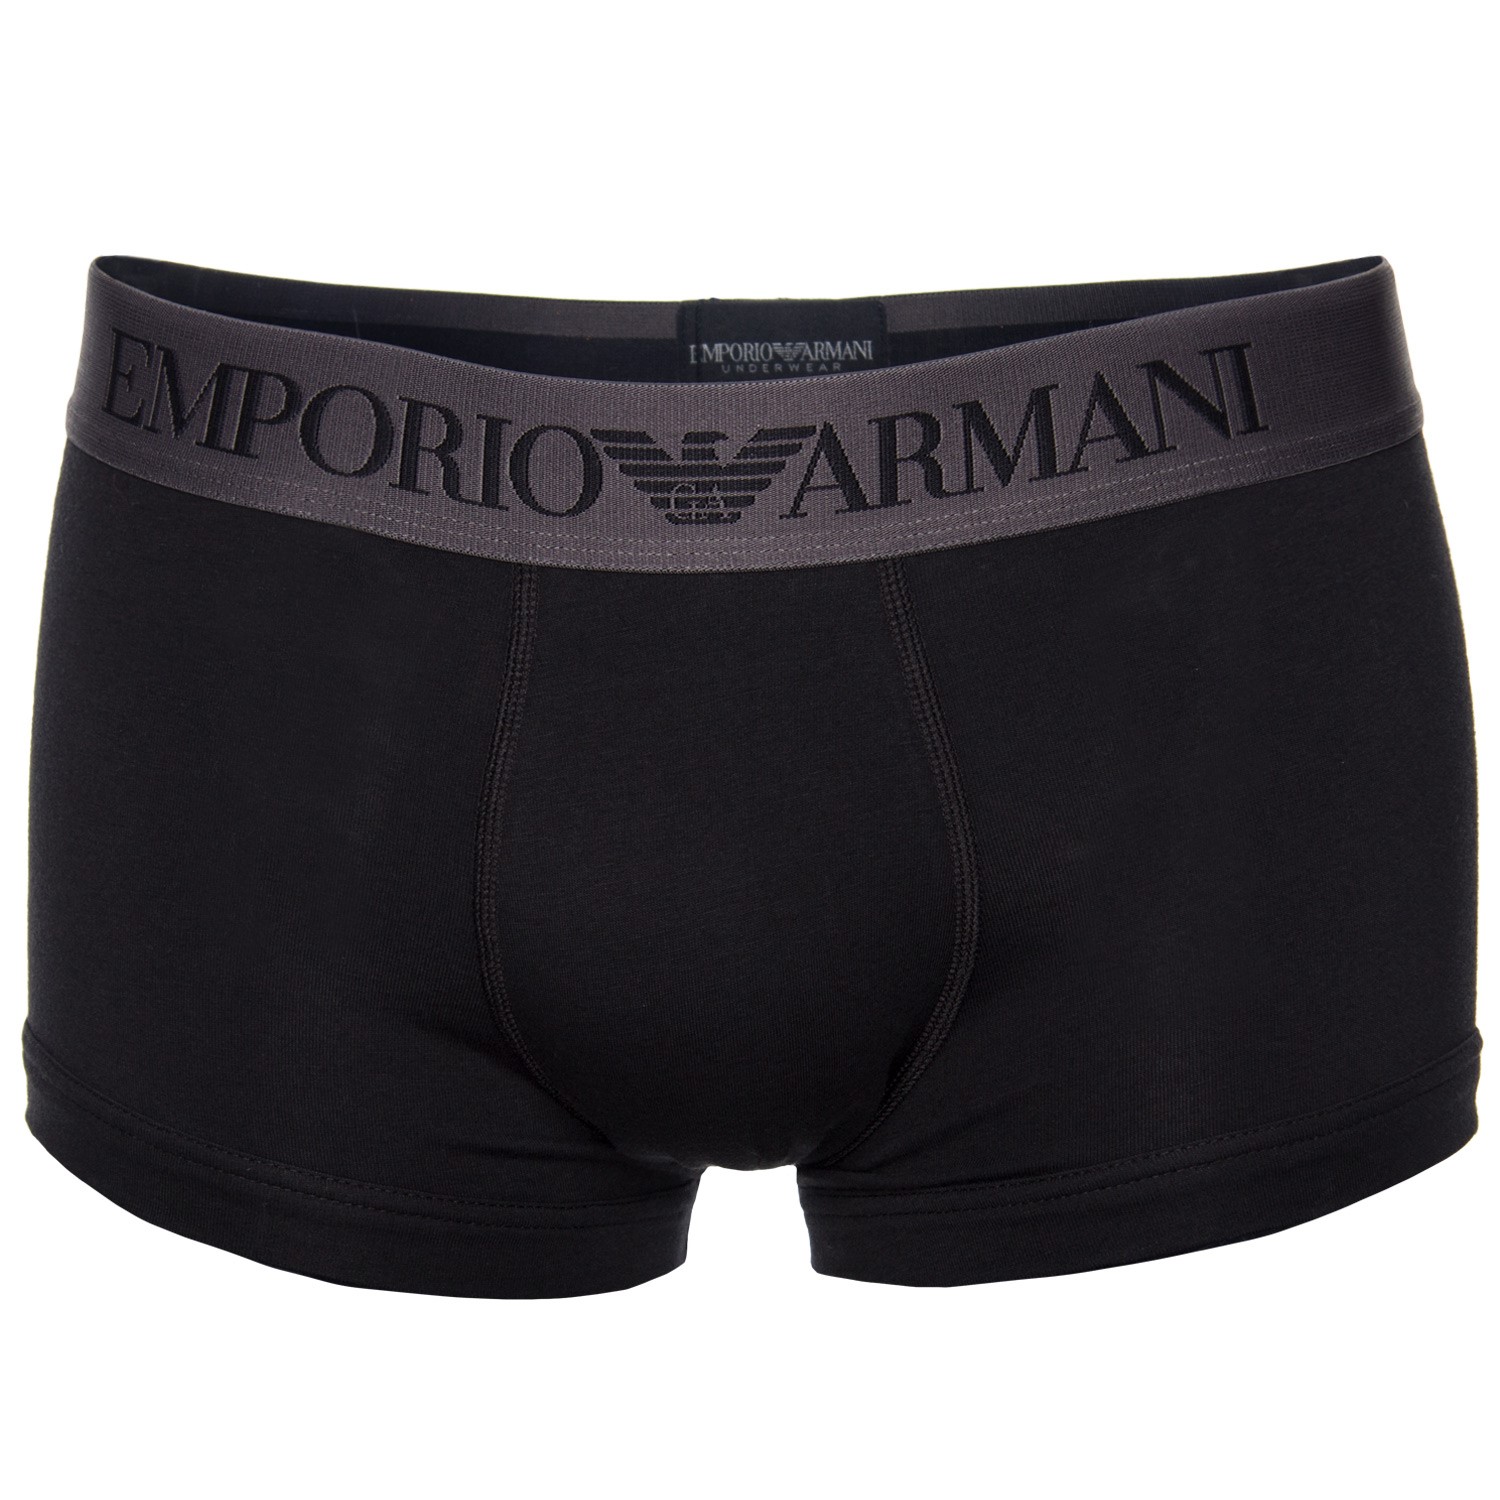 Emporio Armani Iconic Logoband Trunk